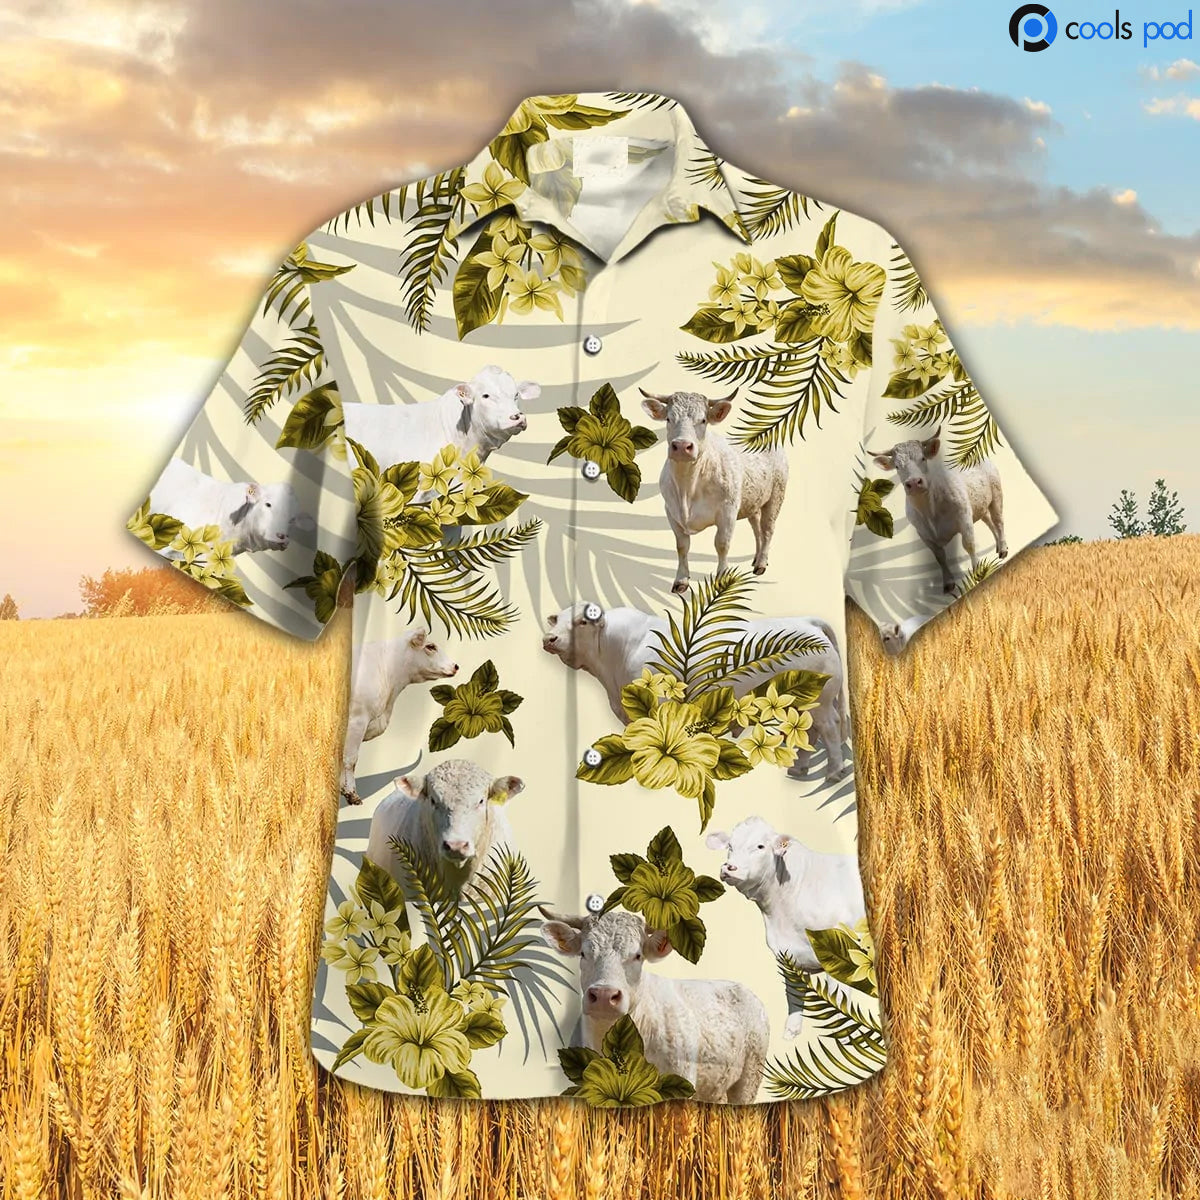 Charolais Hibiscus Hawaiian Shirt/ Yellow Hawaiian Shirt For Farmer/ Cute Hawaii Shirt Men Women